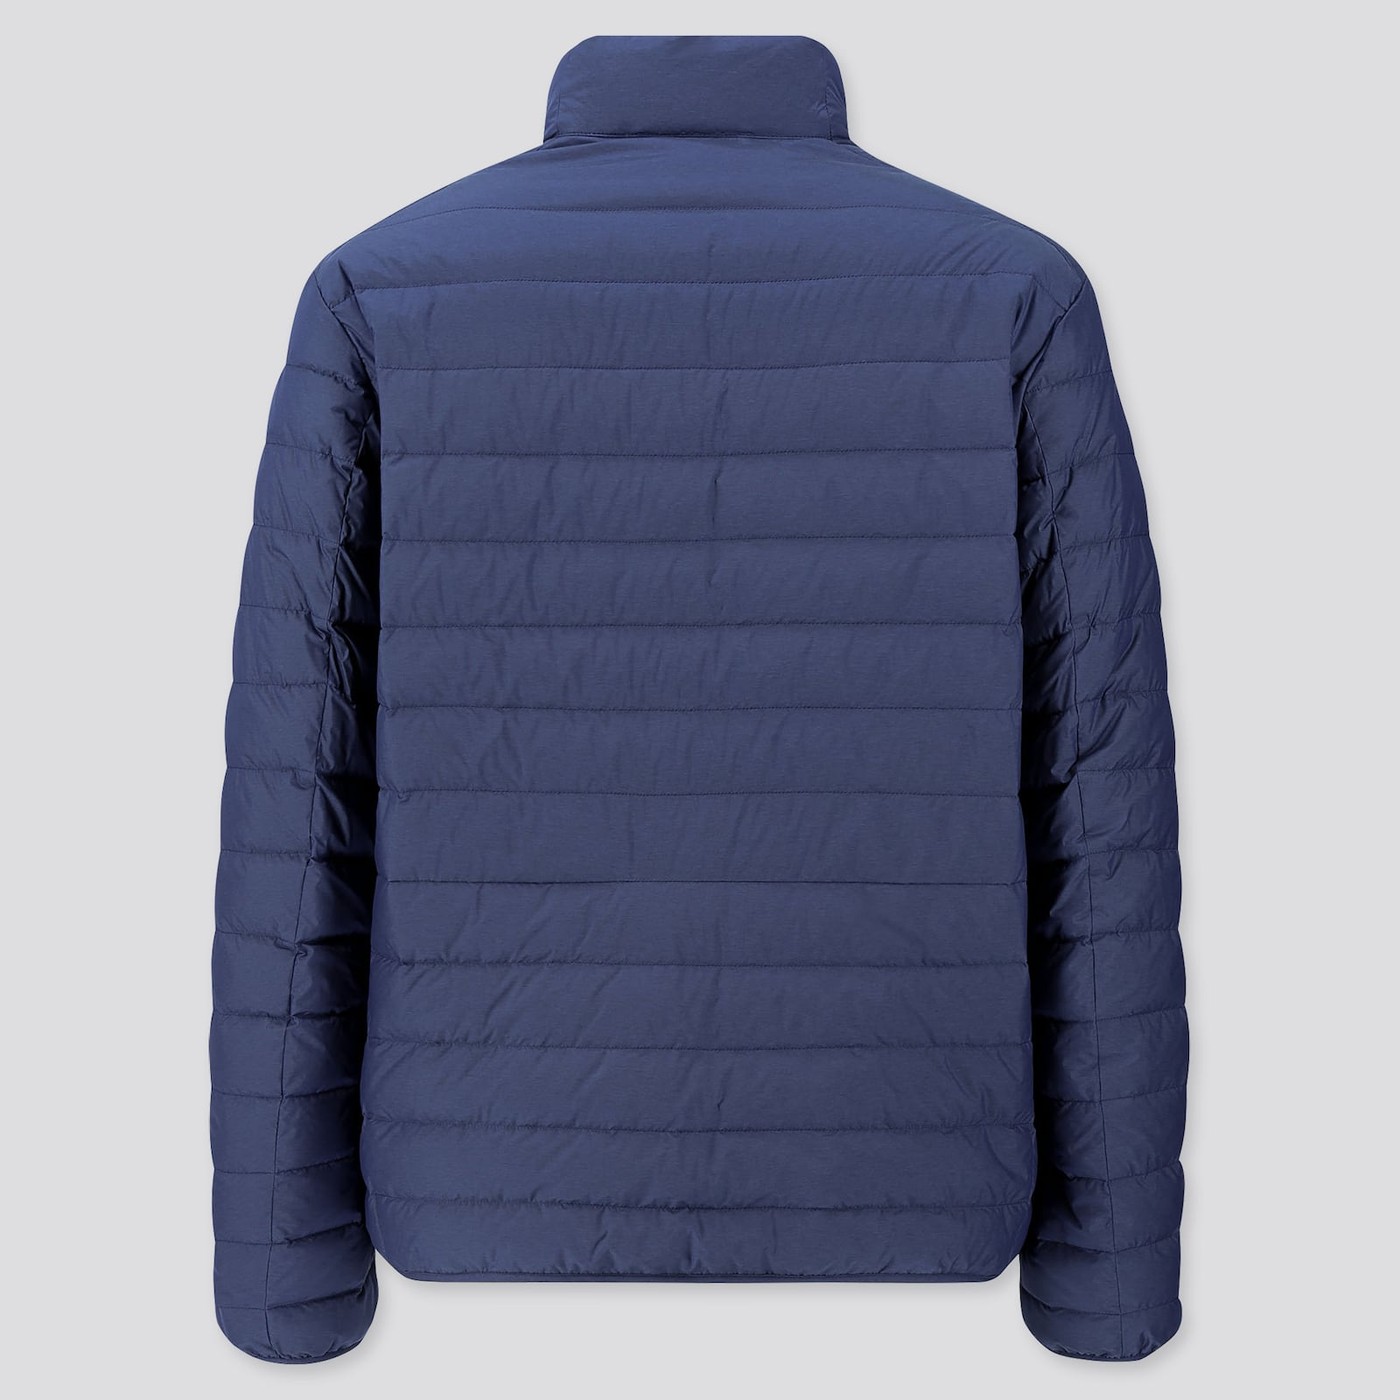 Куртка демисезонная - мужская куртка Uniqlo, S, S